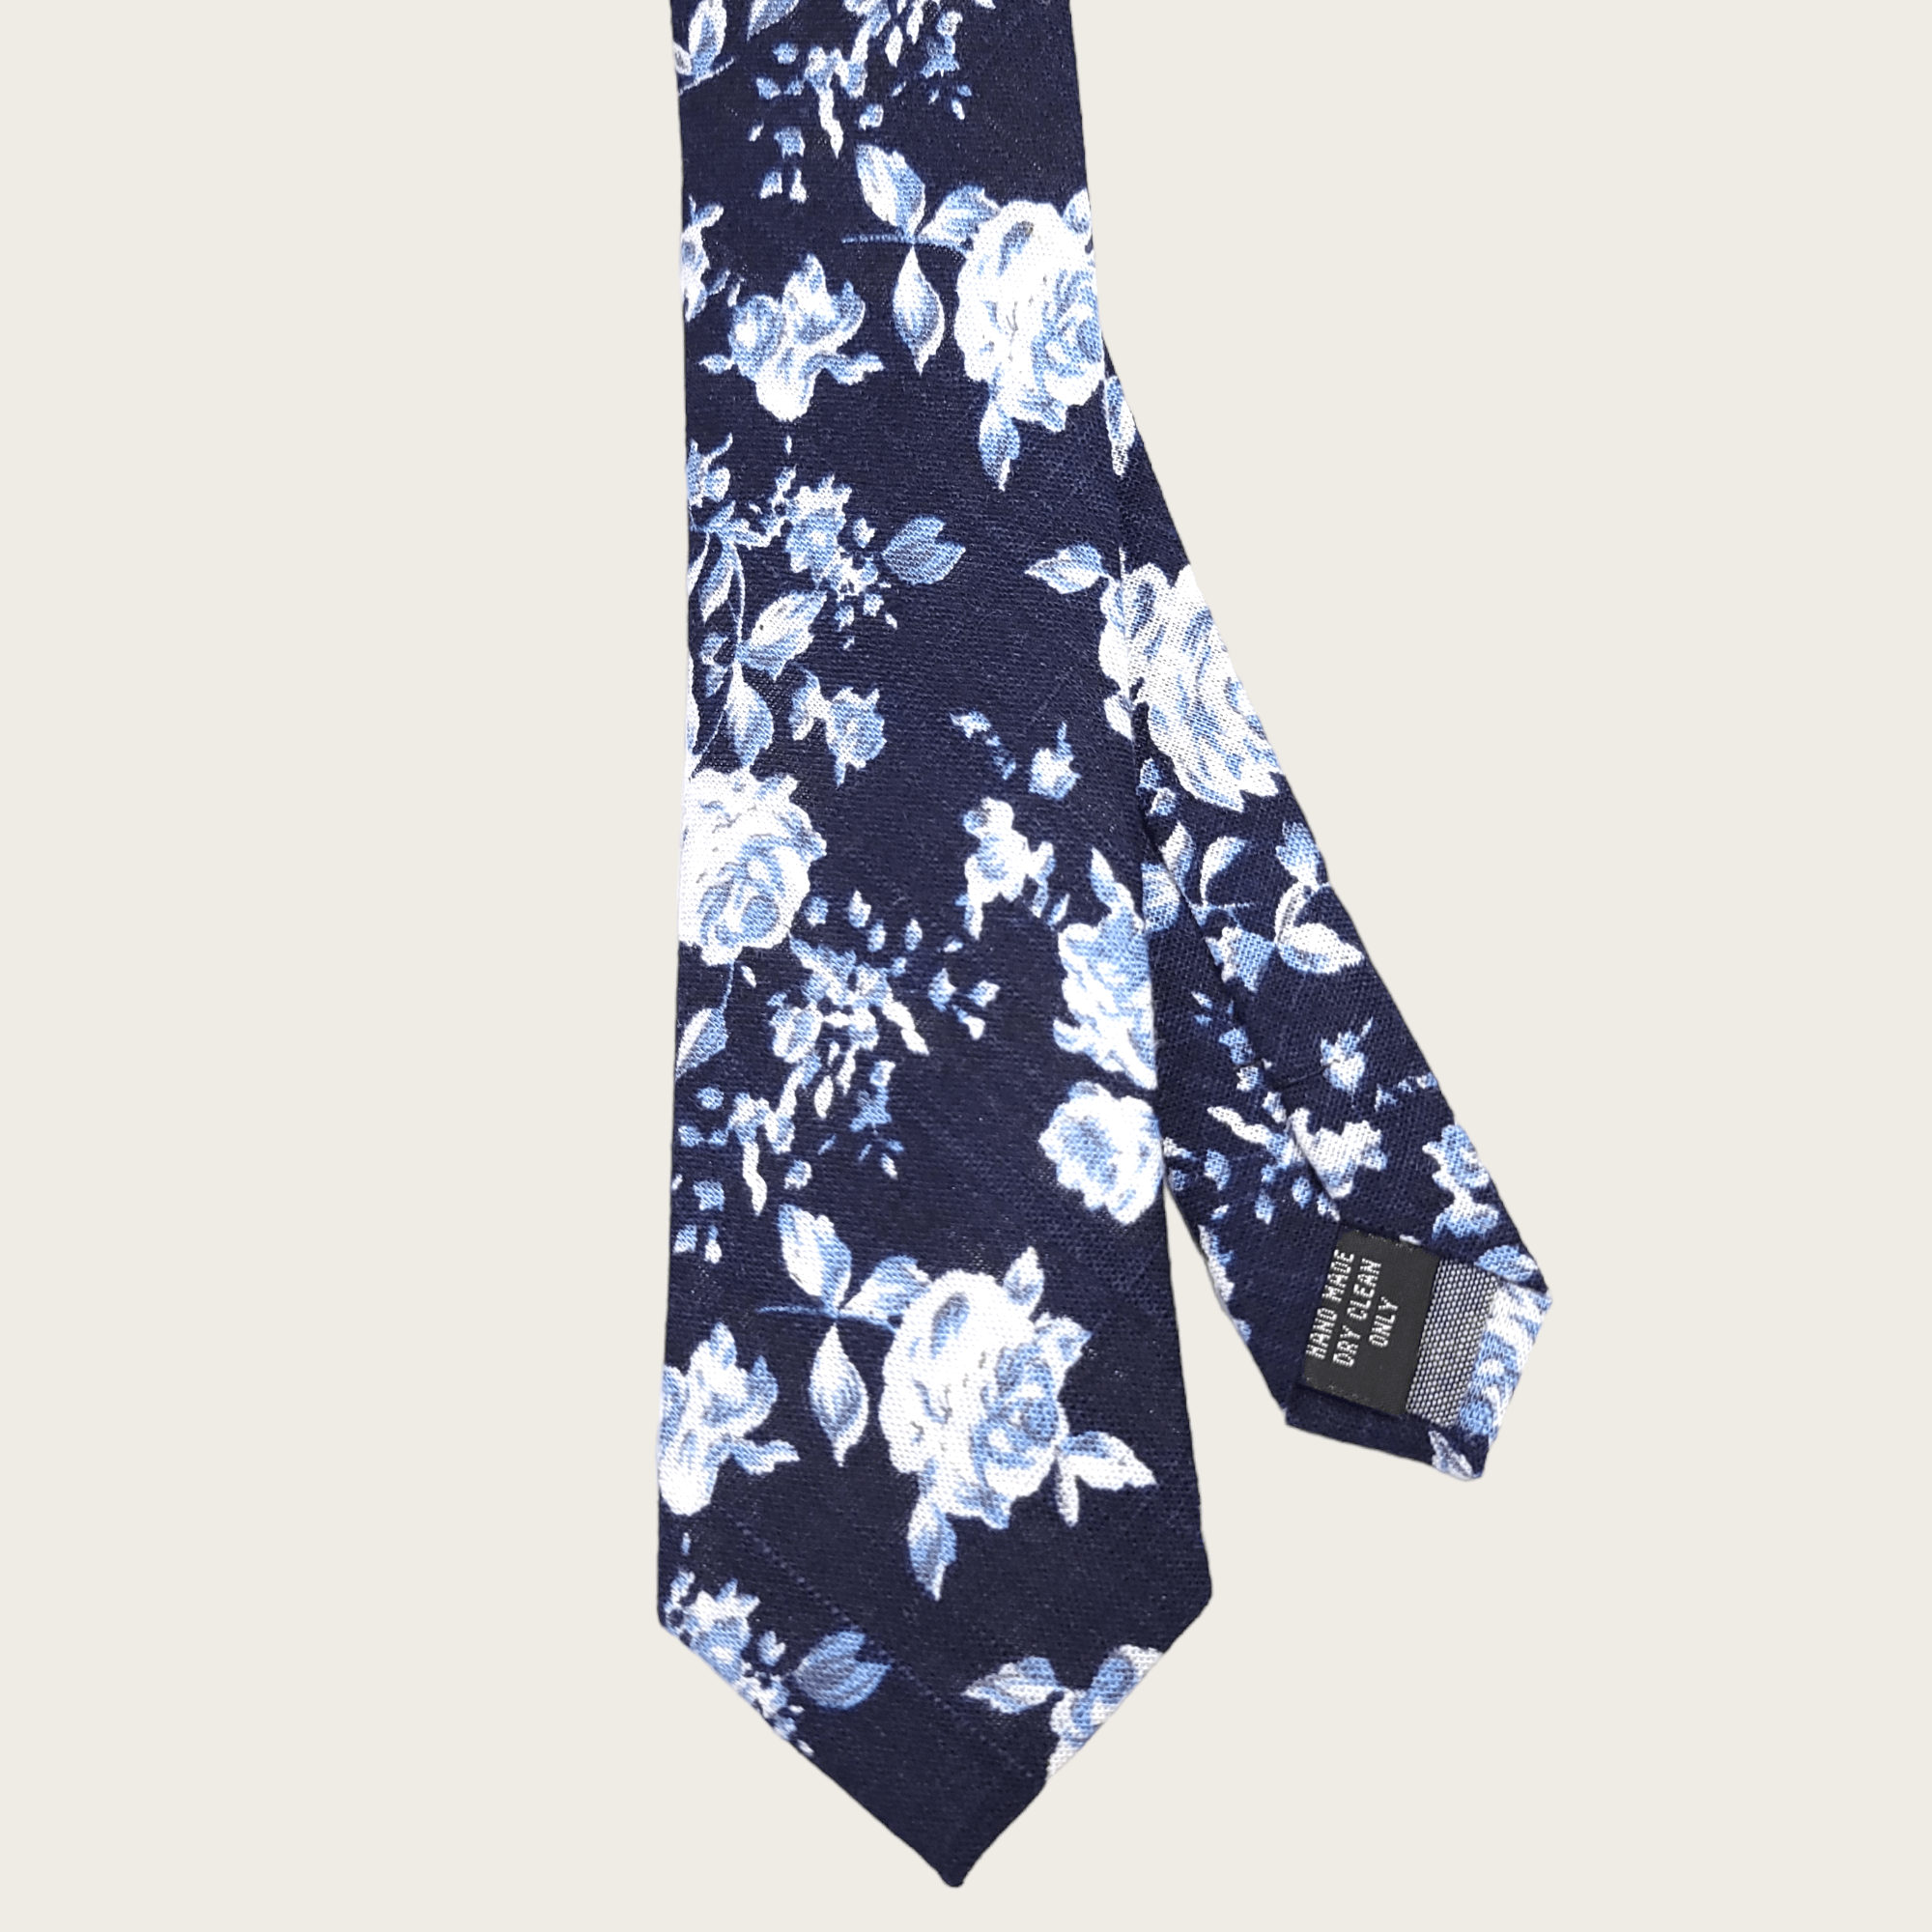 Navy Baby Blue Floral Slim Tie - STYLETIE